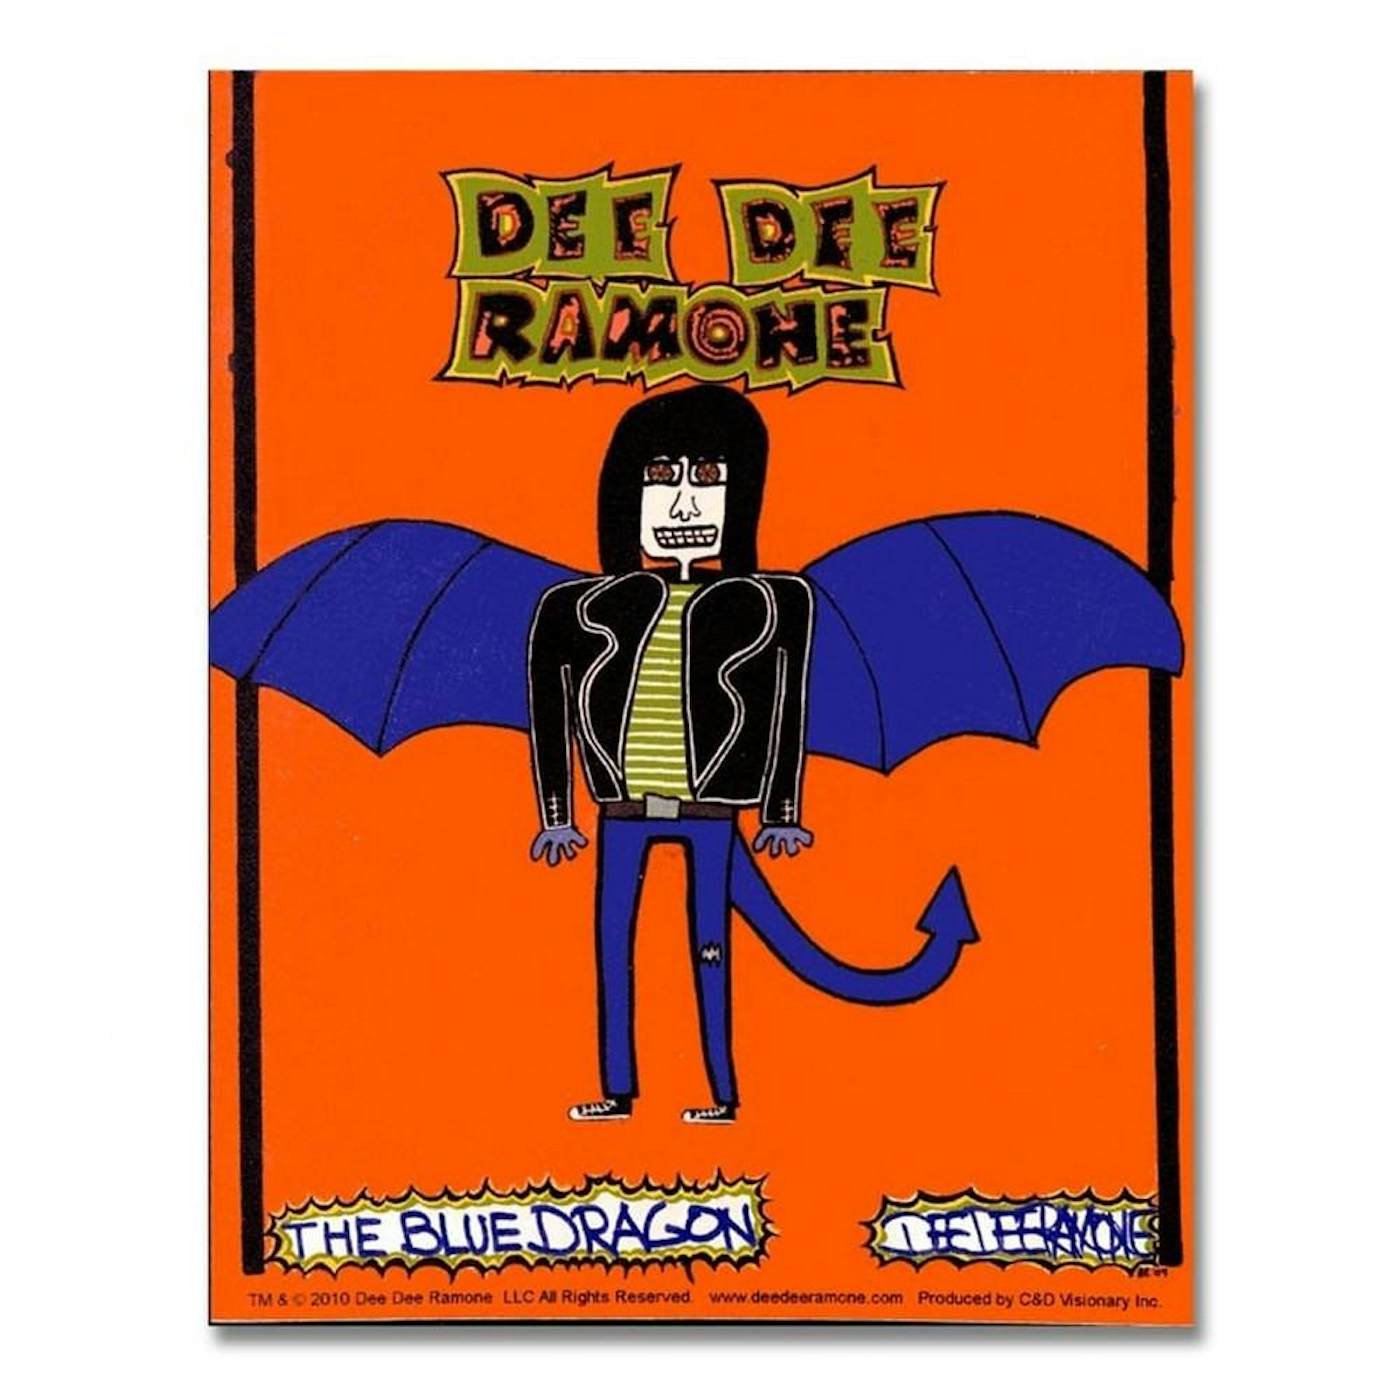 Dee Dee Ramone Blue Dragon Sticker